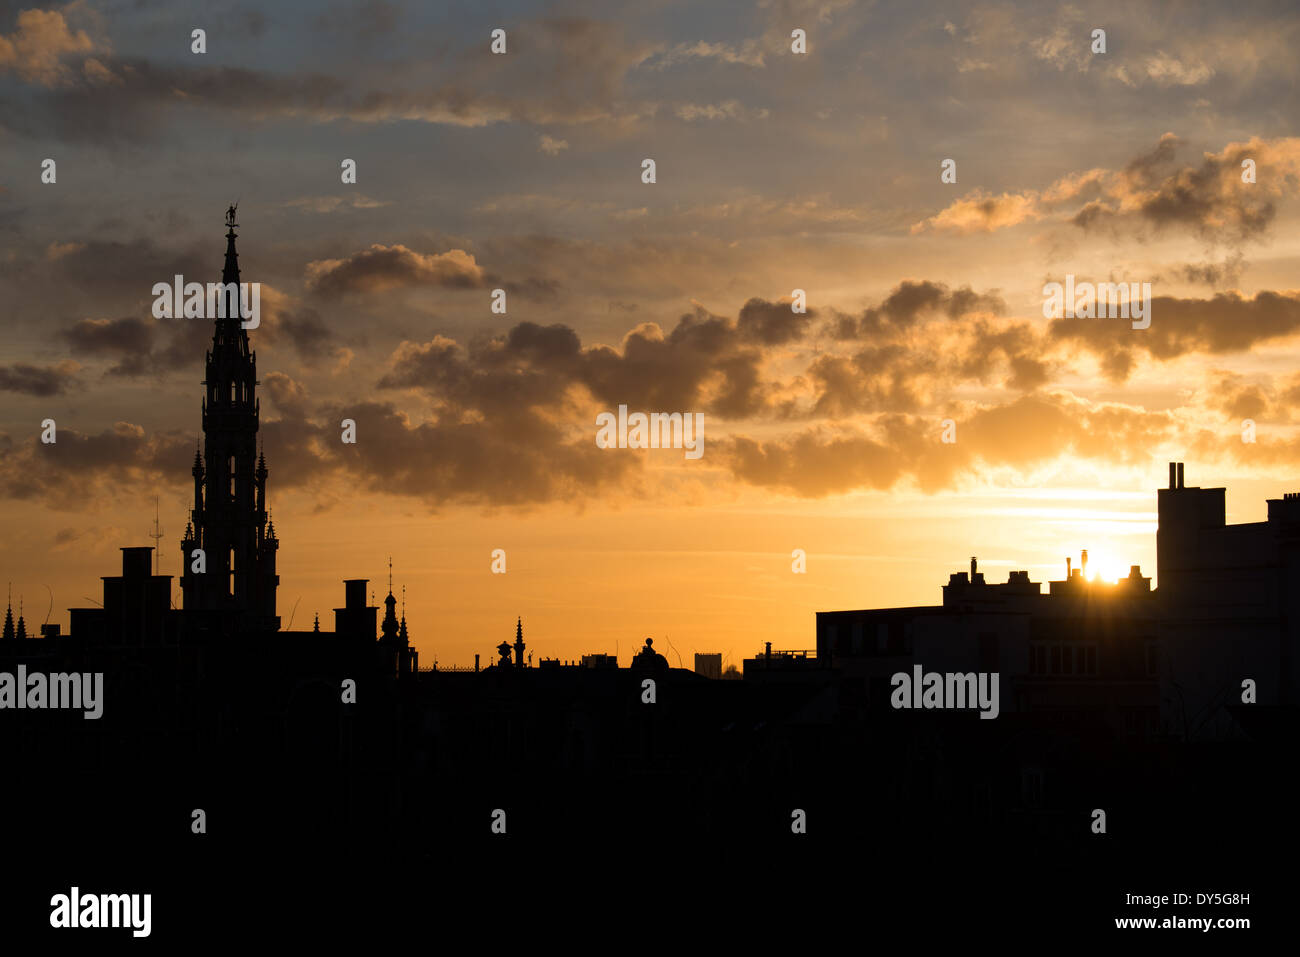 BRUXELLES, Belgio — la sagoma dello skyline di Bruxelles al tramonto contro un cielo dorato con poche nuvole. L'alta guglia è la torre del Municipio di Bruxelles (Hotel de Ville) che si trova a 96 metri. Foto Stock